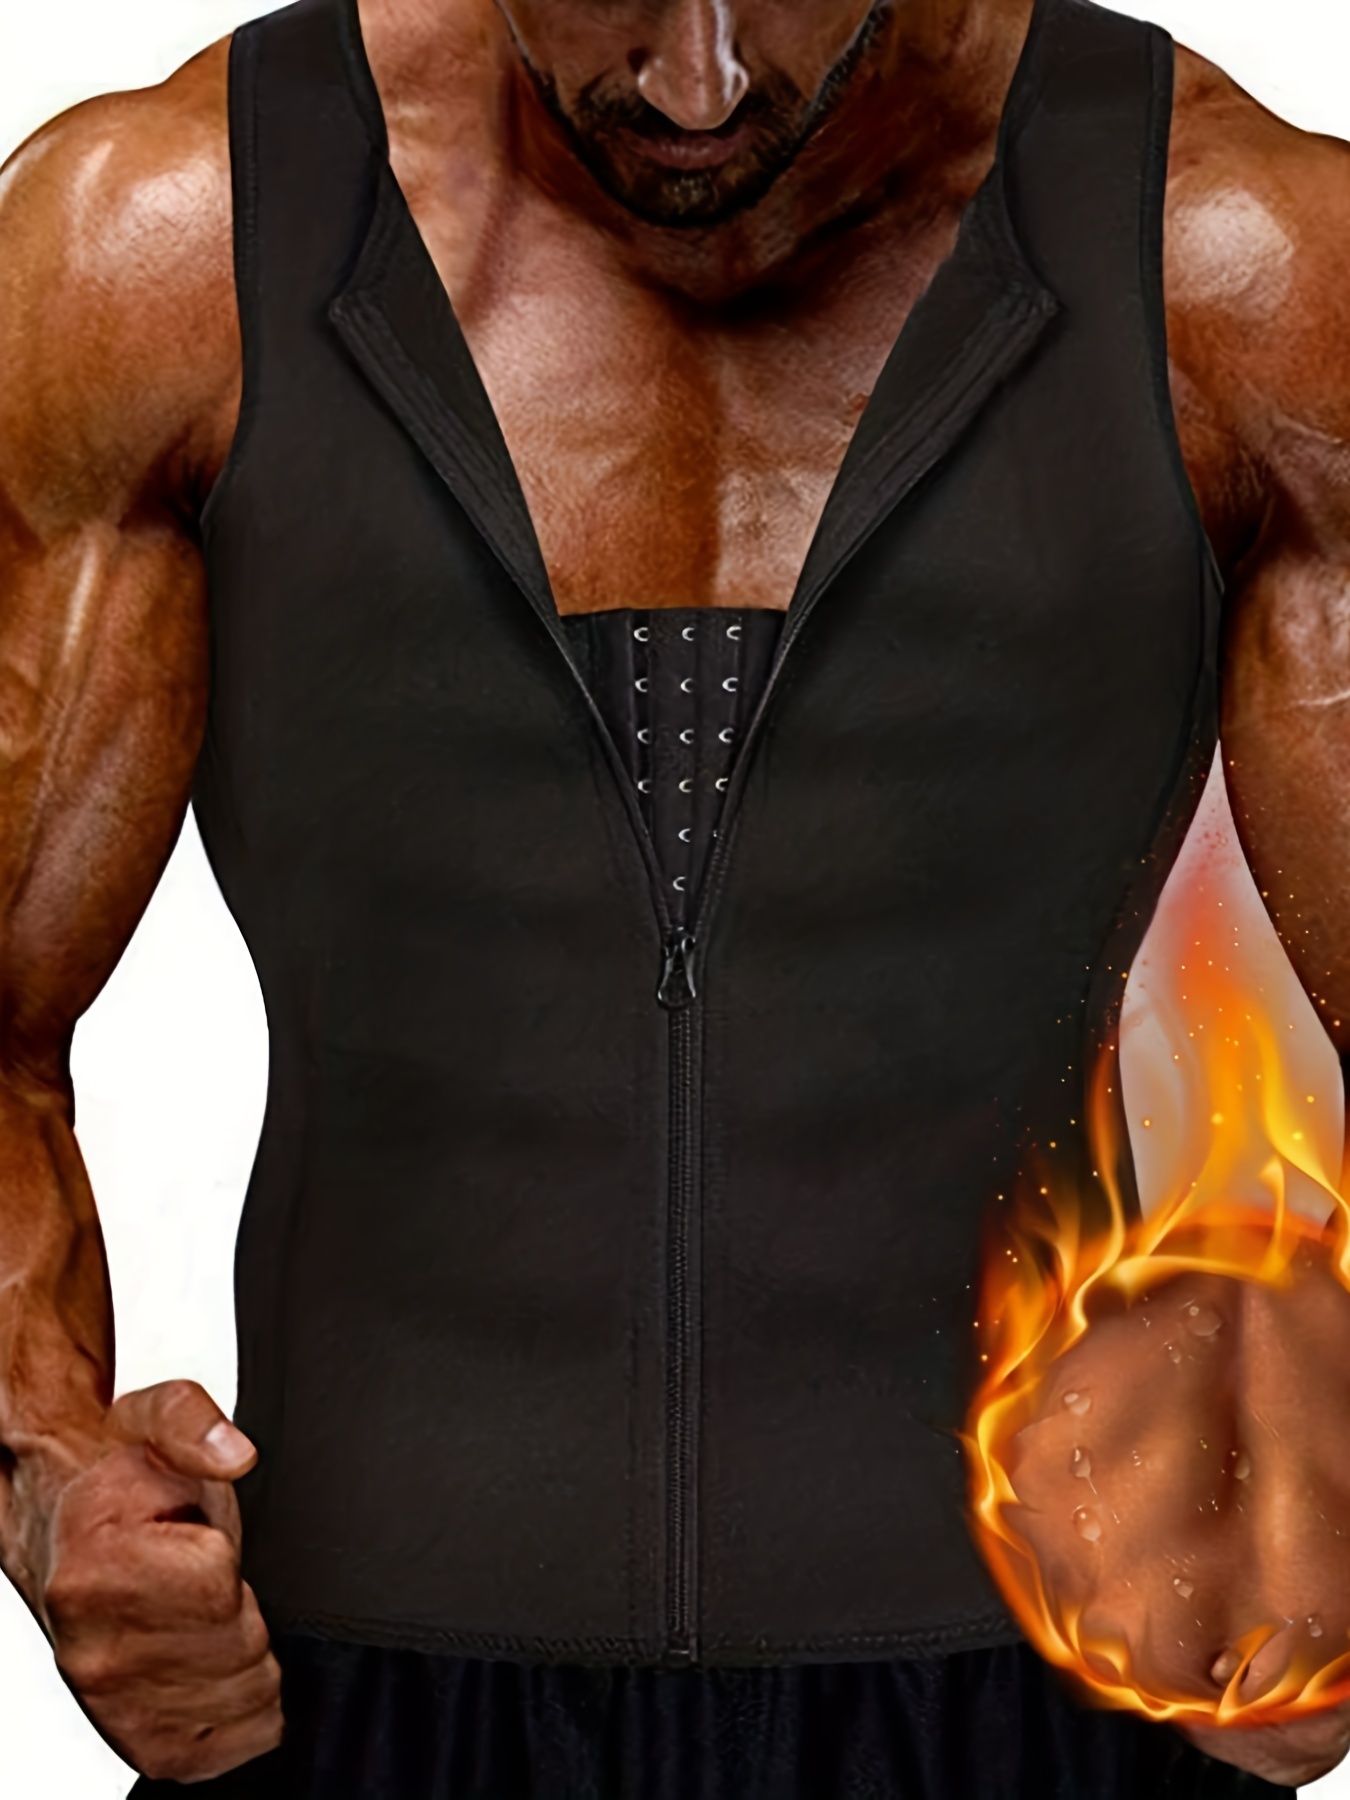  LIYUN Men Sauna Vest Body Shape Waist Trainer with